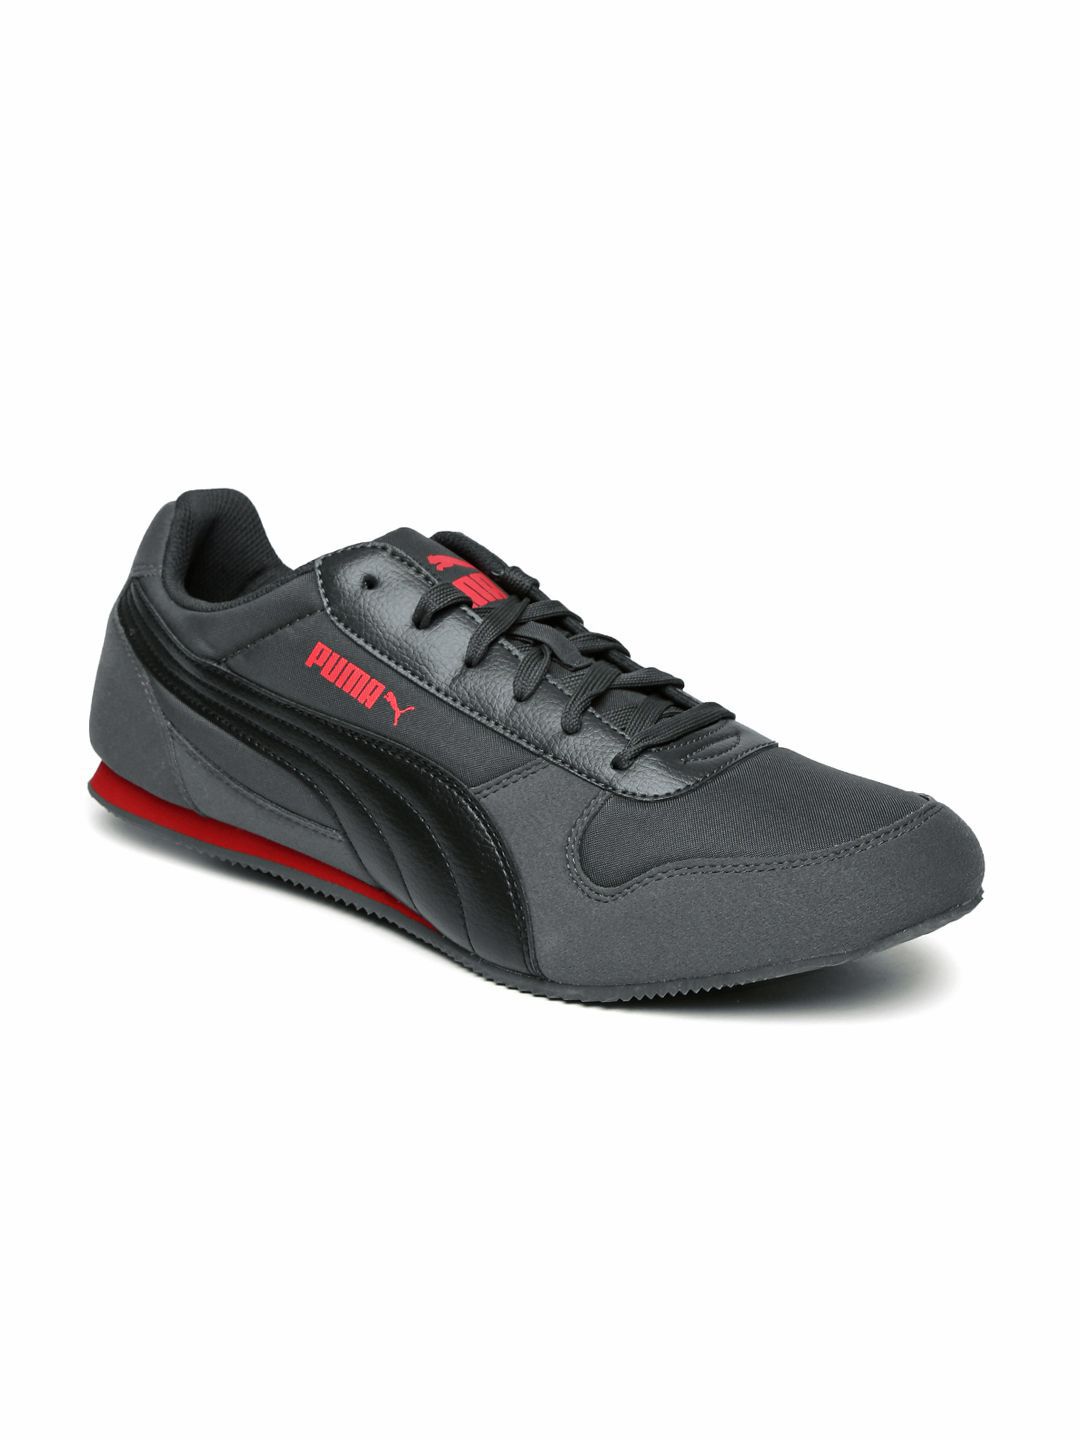 Puma Men Solid Superior DP Sneakers Gray Casual Shoes - Buy Puma Men ...